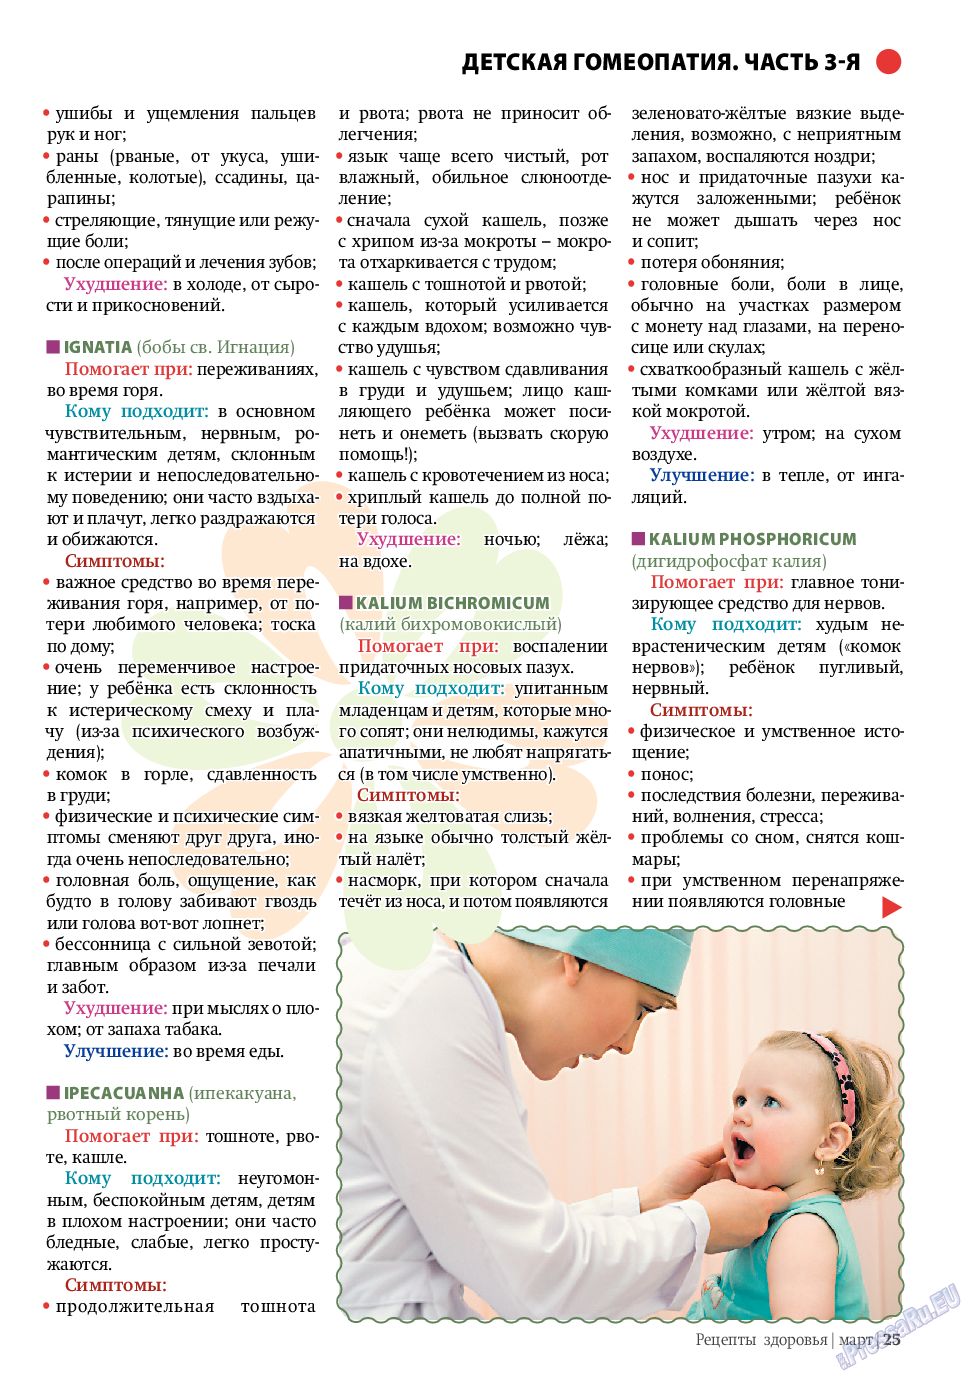 Рецепты здоровья, журнал. 2011 №3 стр.25